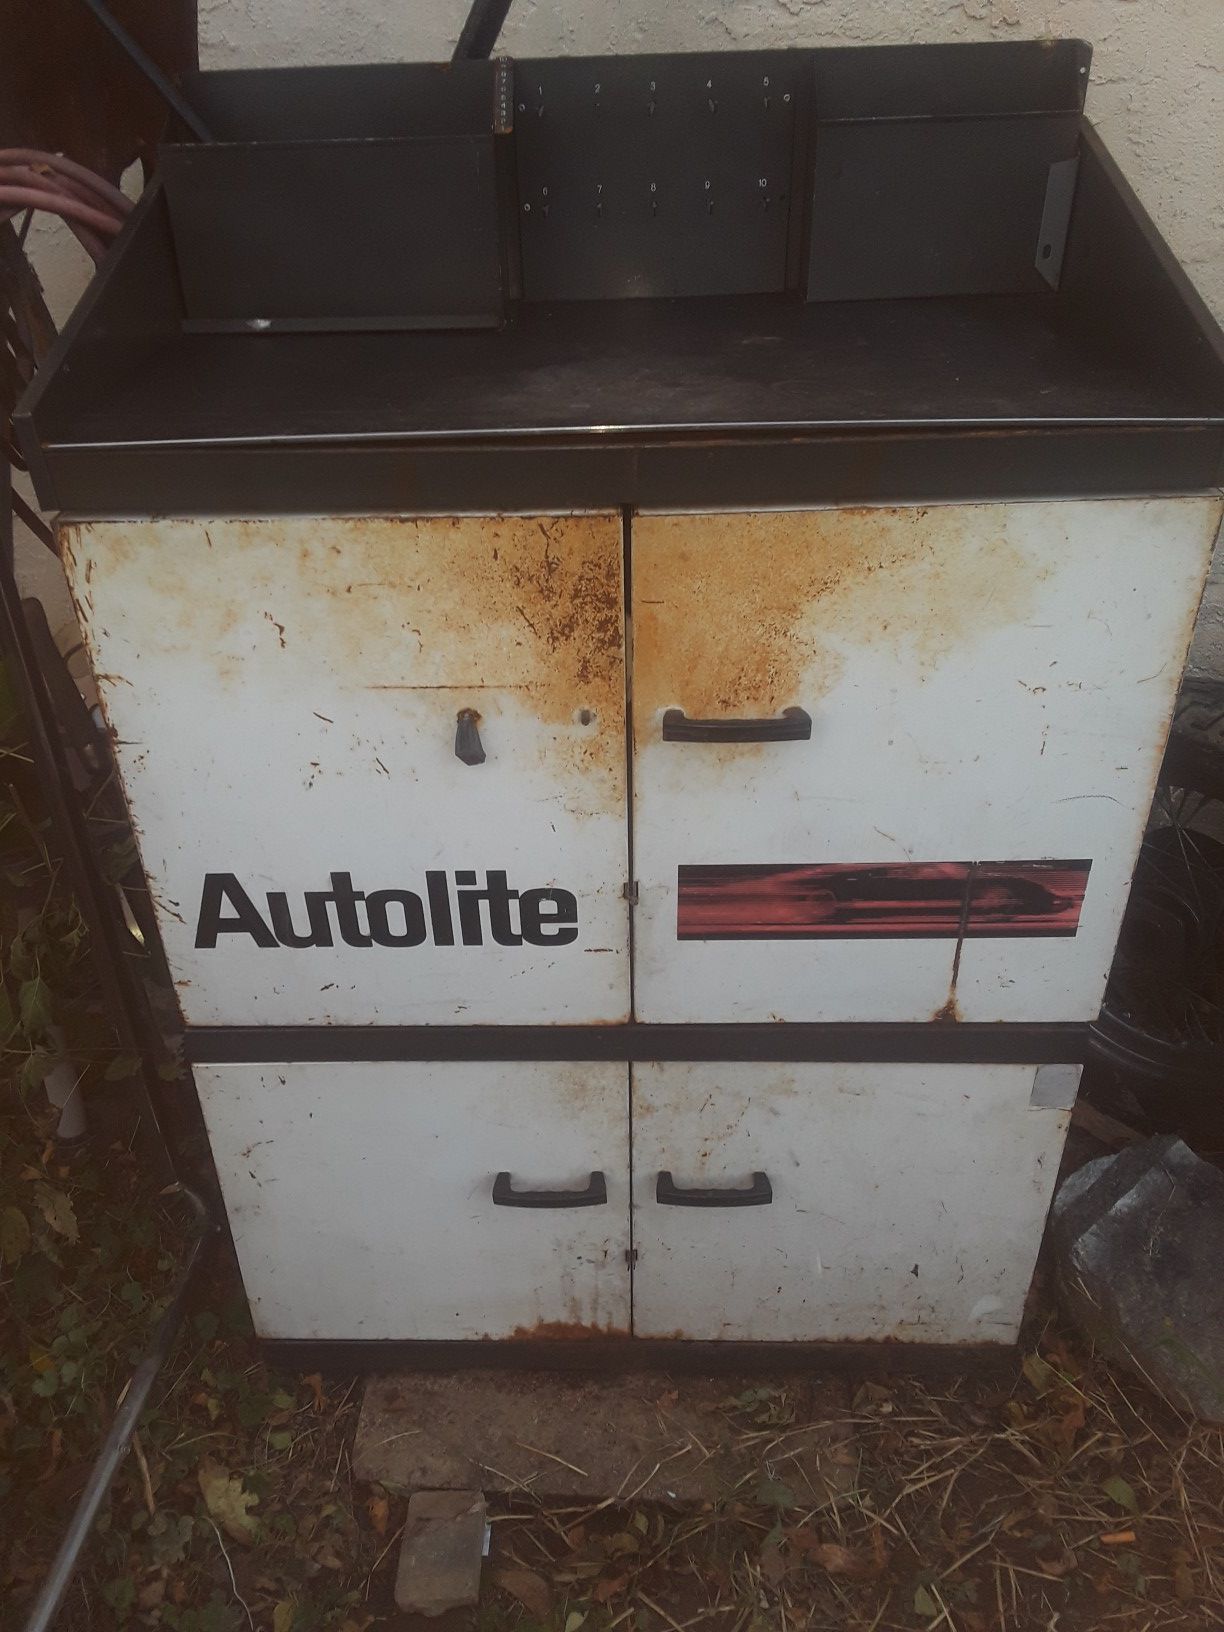 Antique Autolite metal cabinet